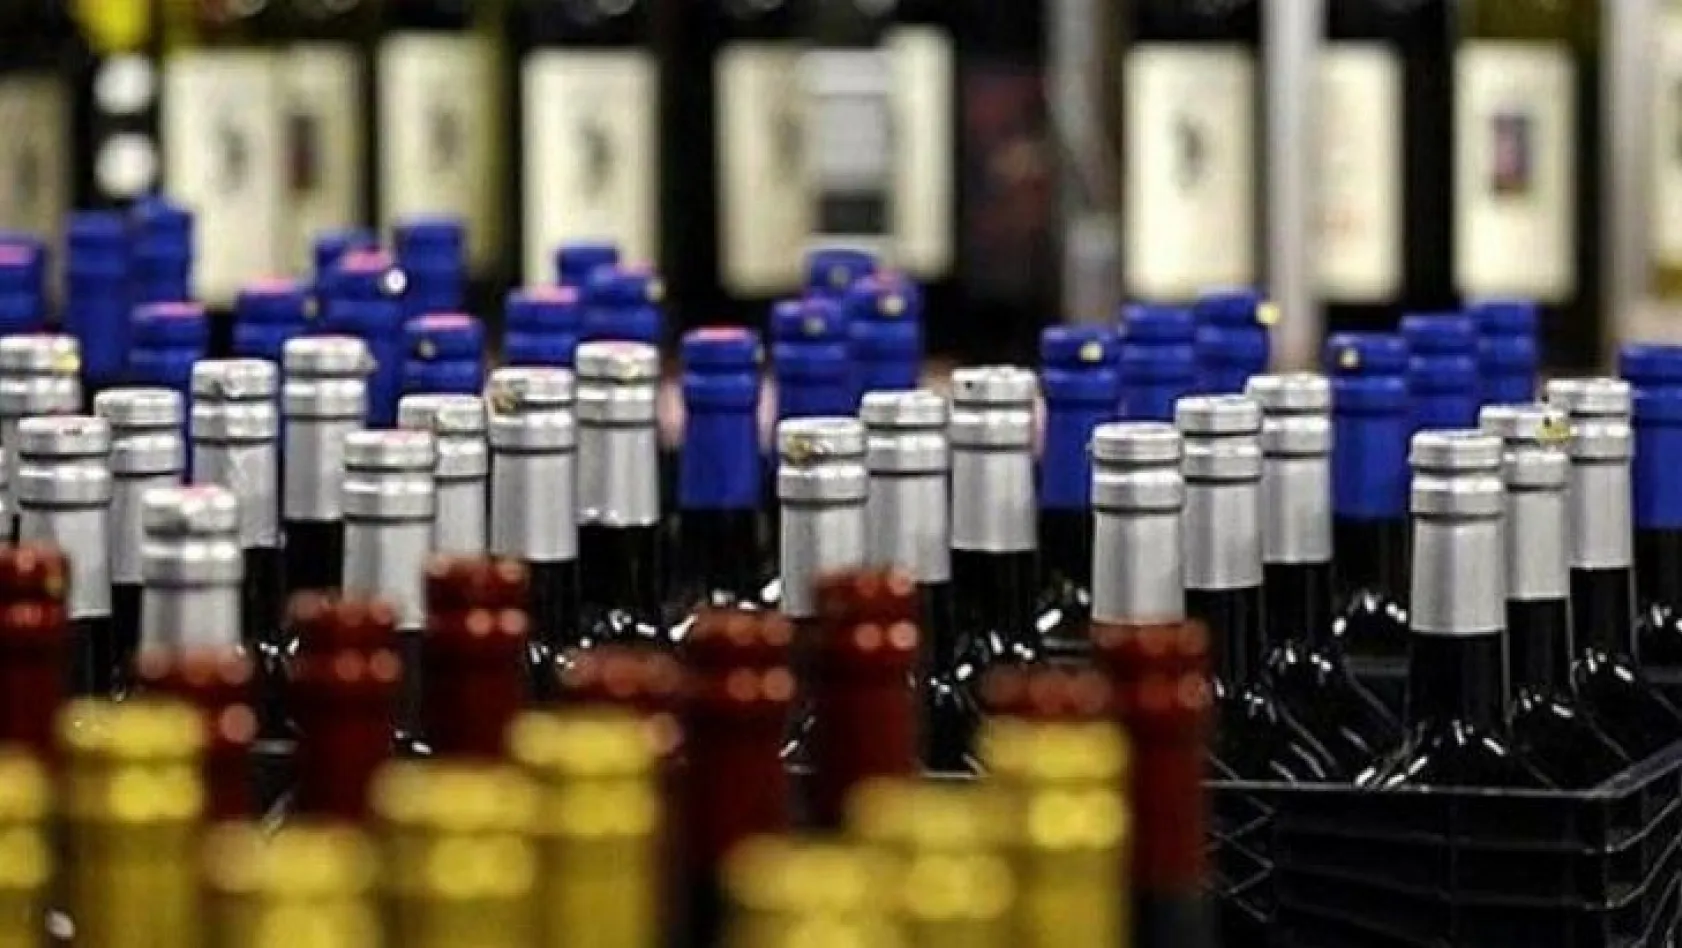 Alkollü içkilerde ÖTV yüzde 17,07 zamlandı